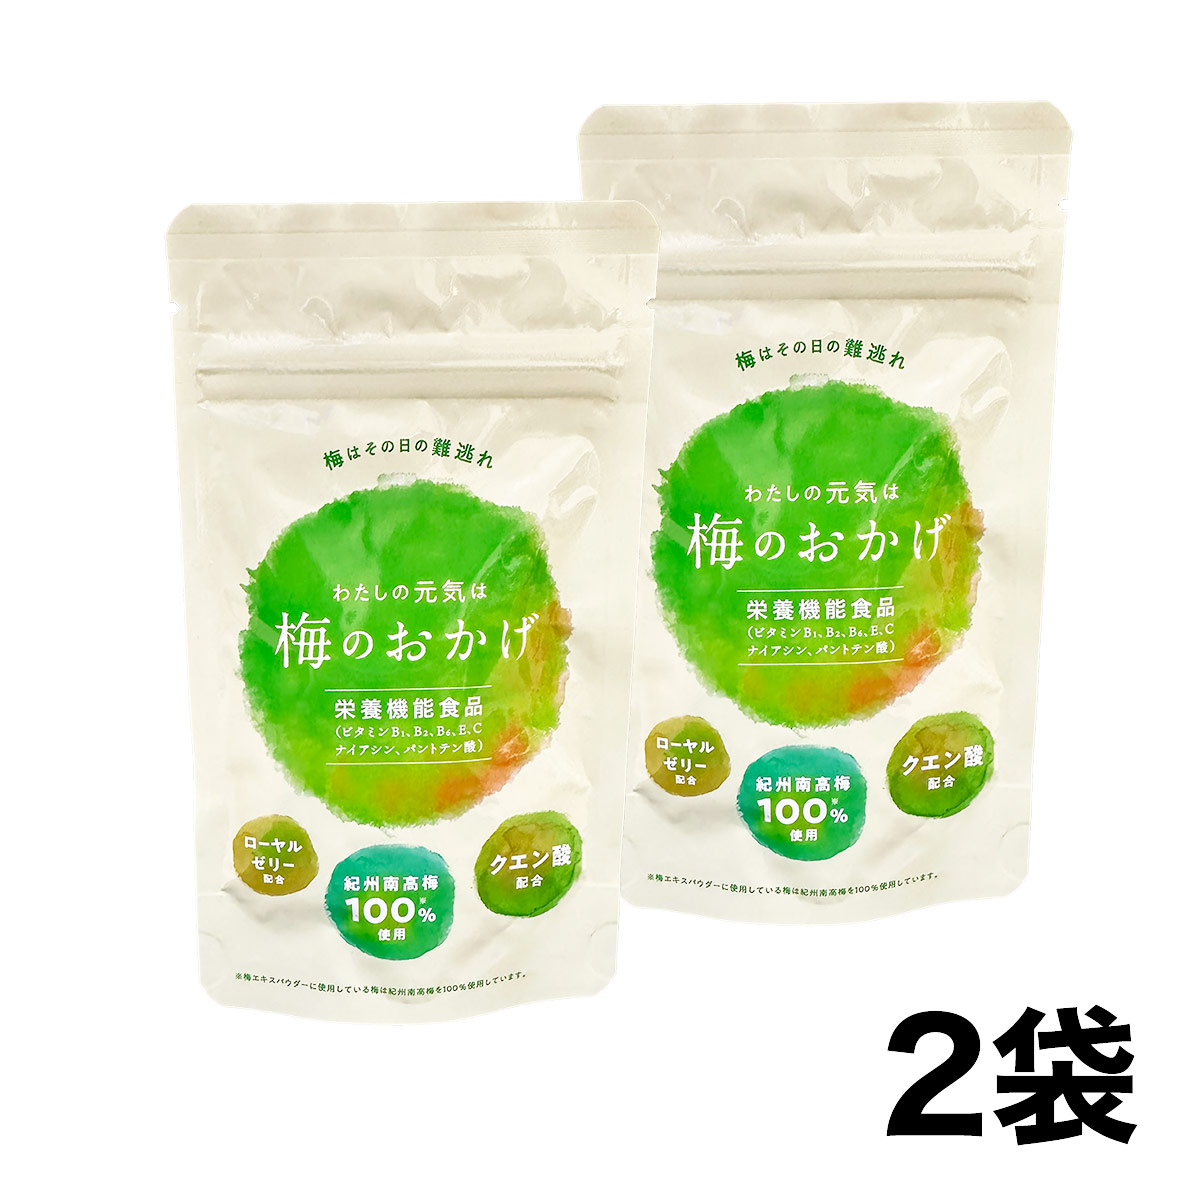 【セール】梅のおかげ 60粒×2袋 (約2か月分) 栄養機能食品 サプリメント (賞味期限2024年8月31日)